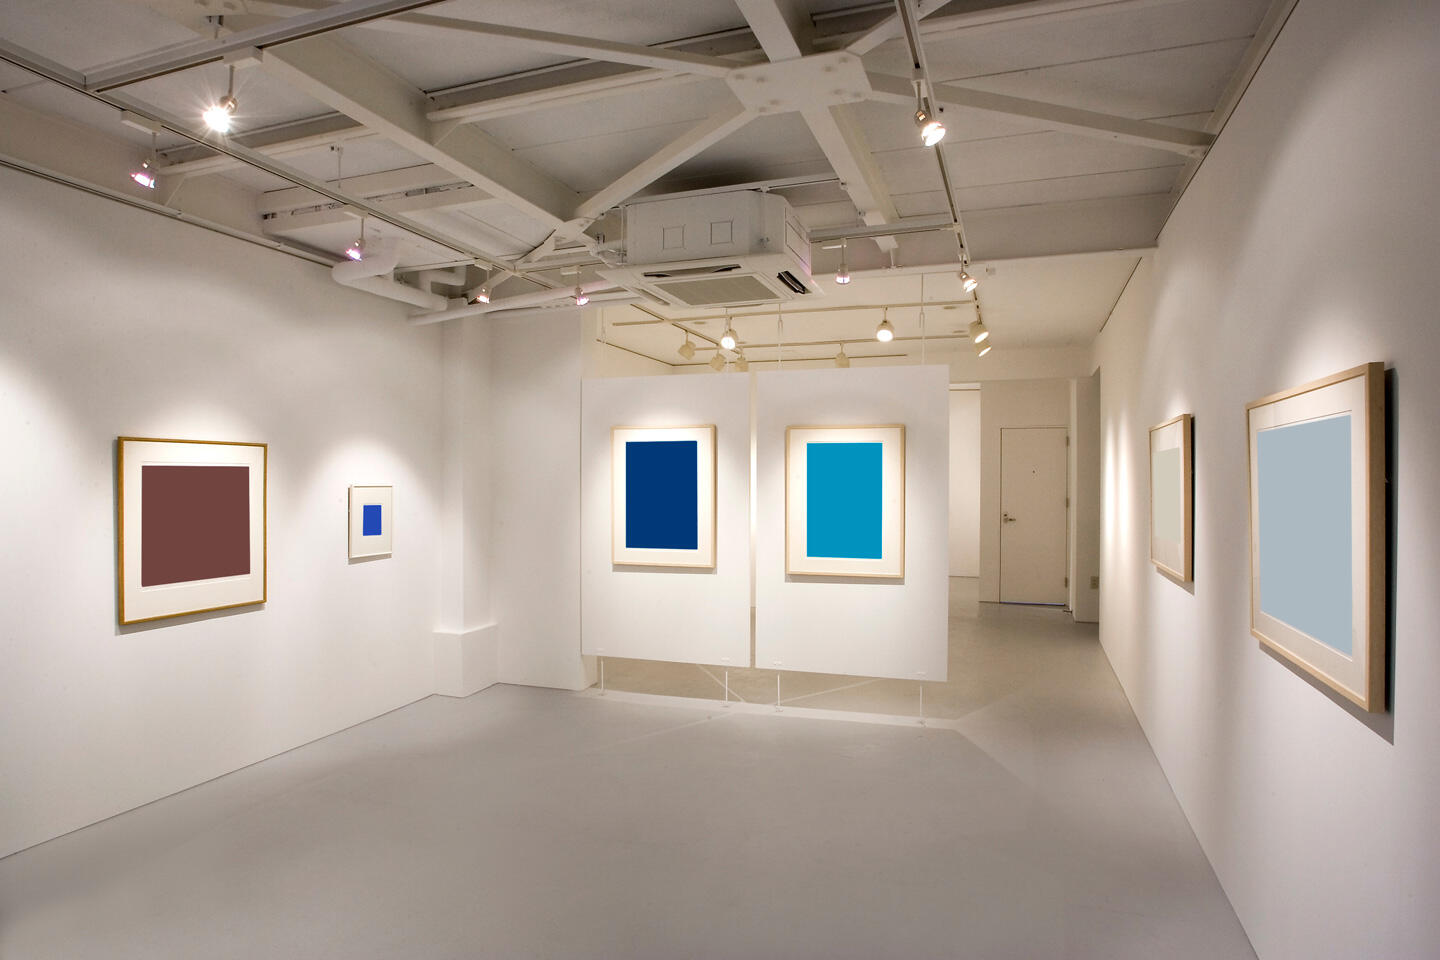 Interior minimalista de una galería de arte moderno en la Feria Internacional de Fotografía Artística de París, mostrando una serie de fotografías enmarcadas de colores vivos en paredes blancas iluminadas por focos. El entorno limpio resalta las obras expuestas.